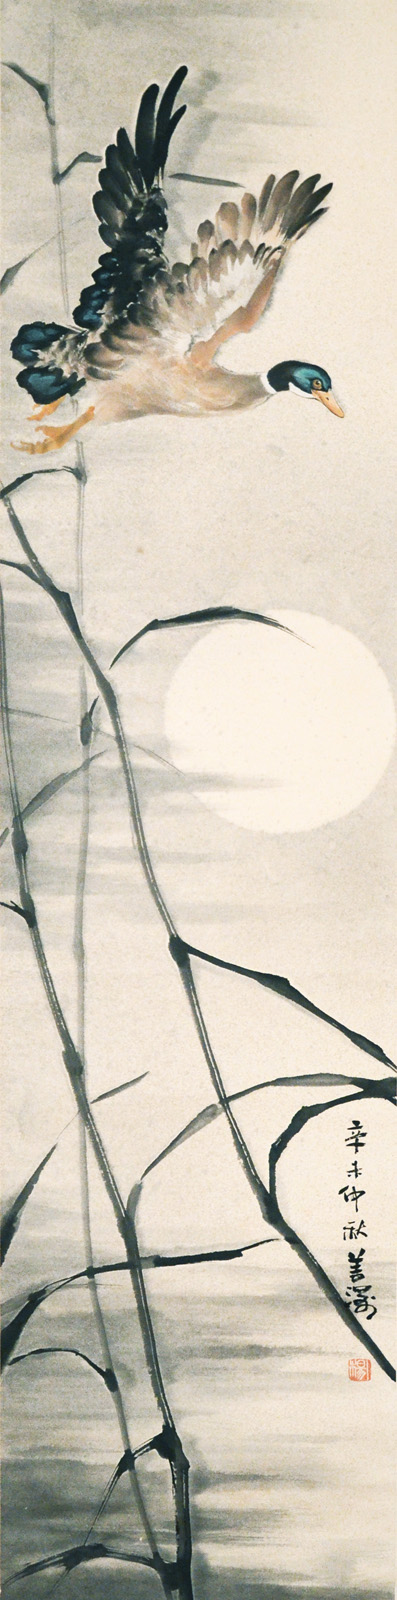 楊善深  (1913 - 2004)  雁搖月影  設色水墨紙本立軸  1991 年作  款識：辛未仲秋善深  鈐印：(楊)  Yang Shanshen  Mandarin Duck and